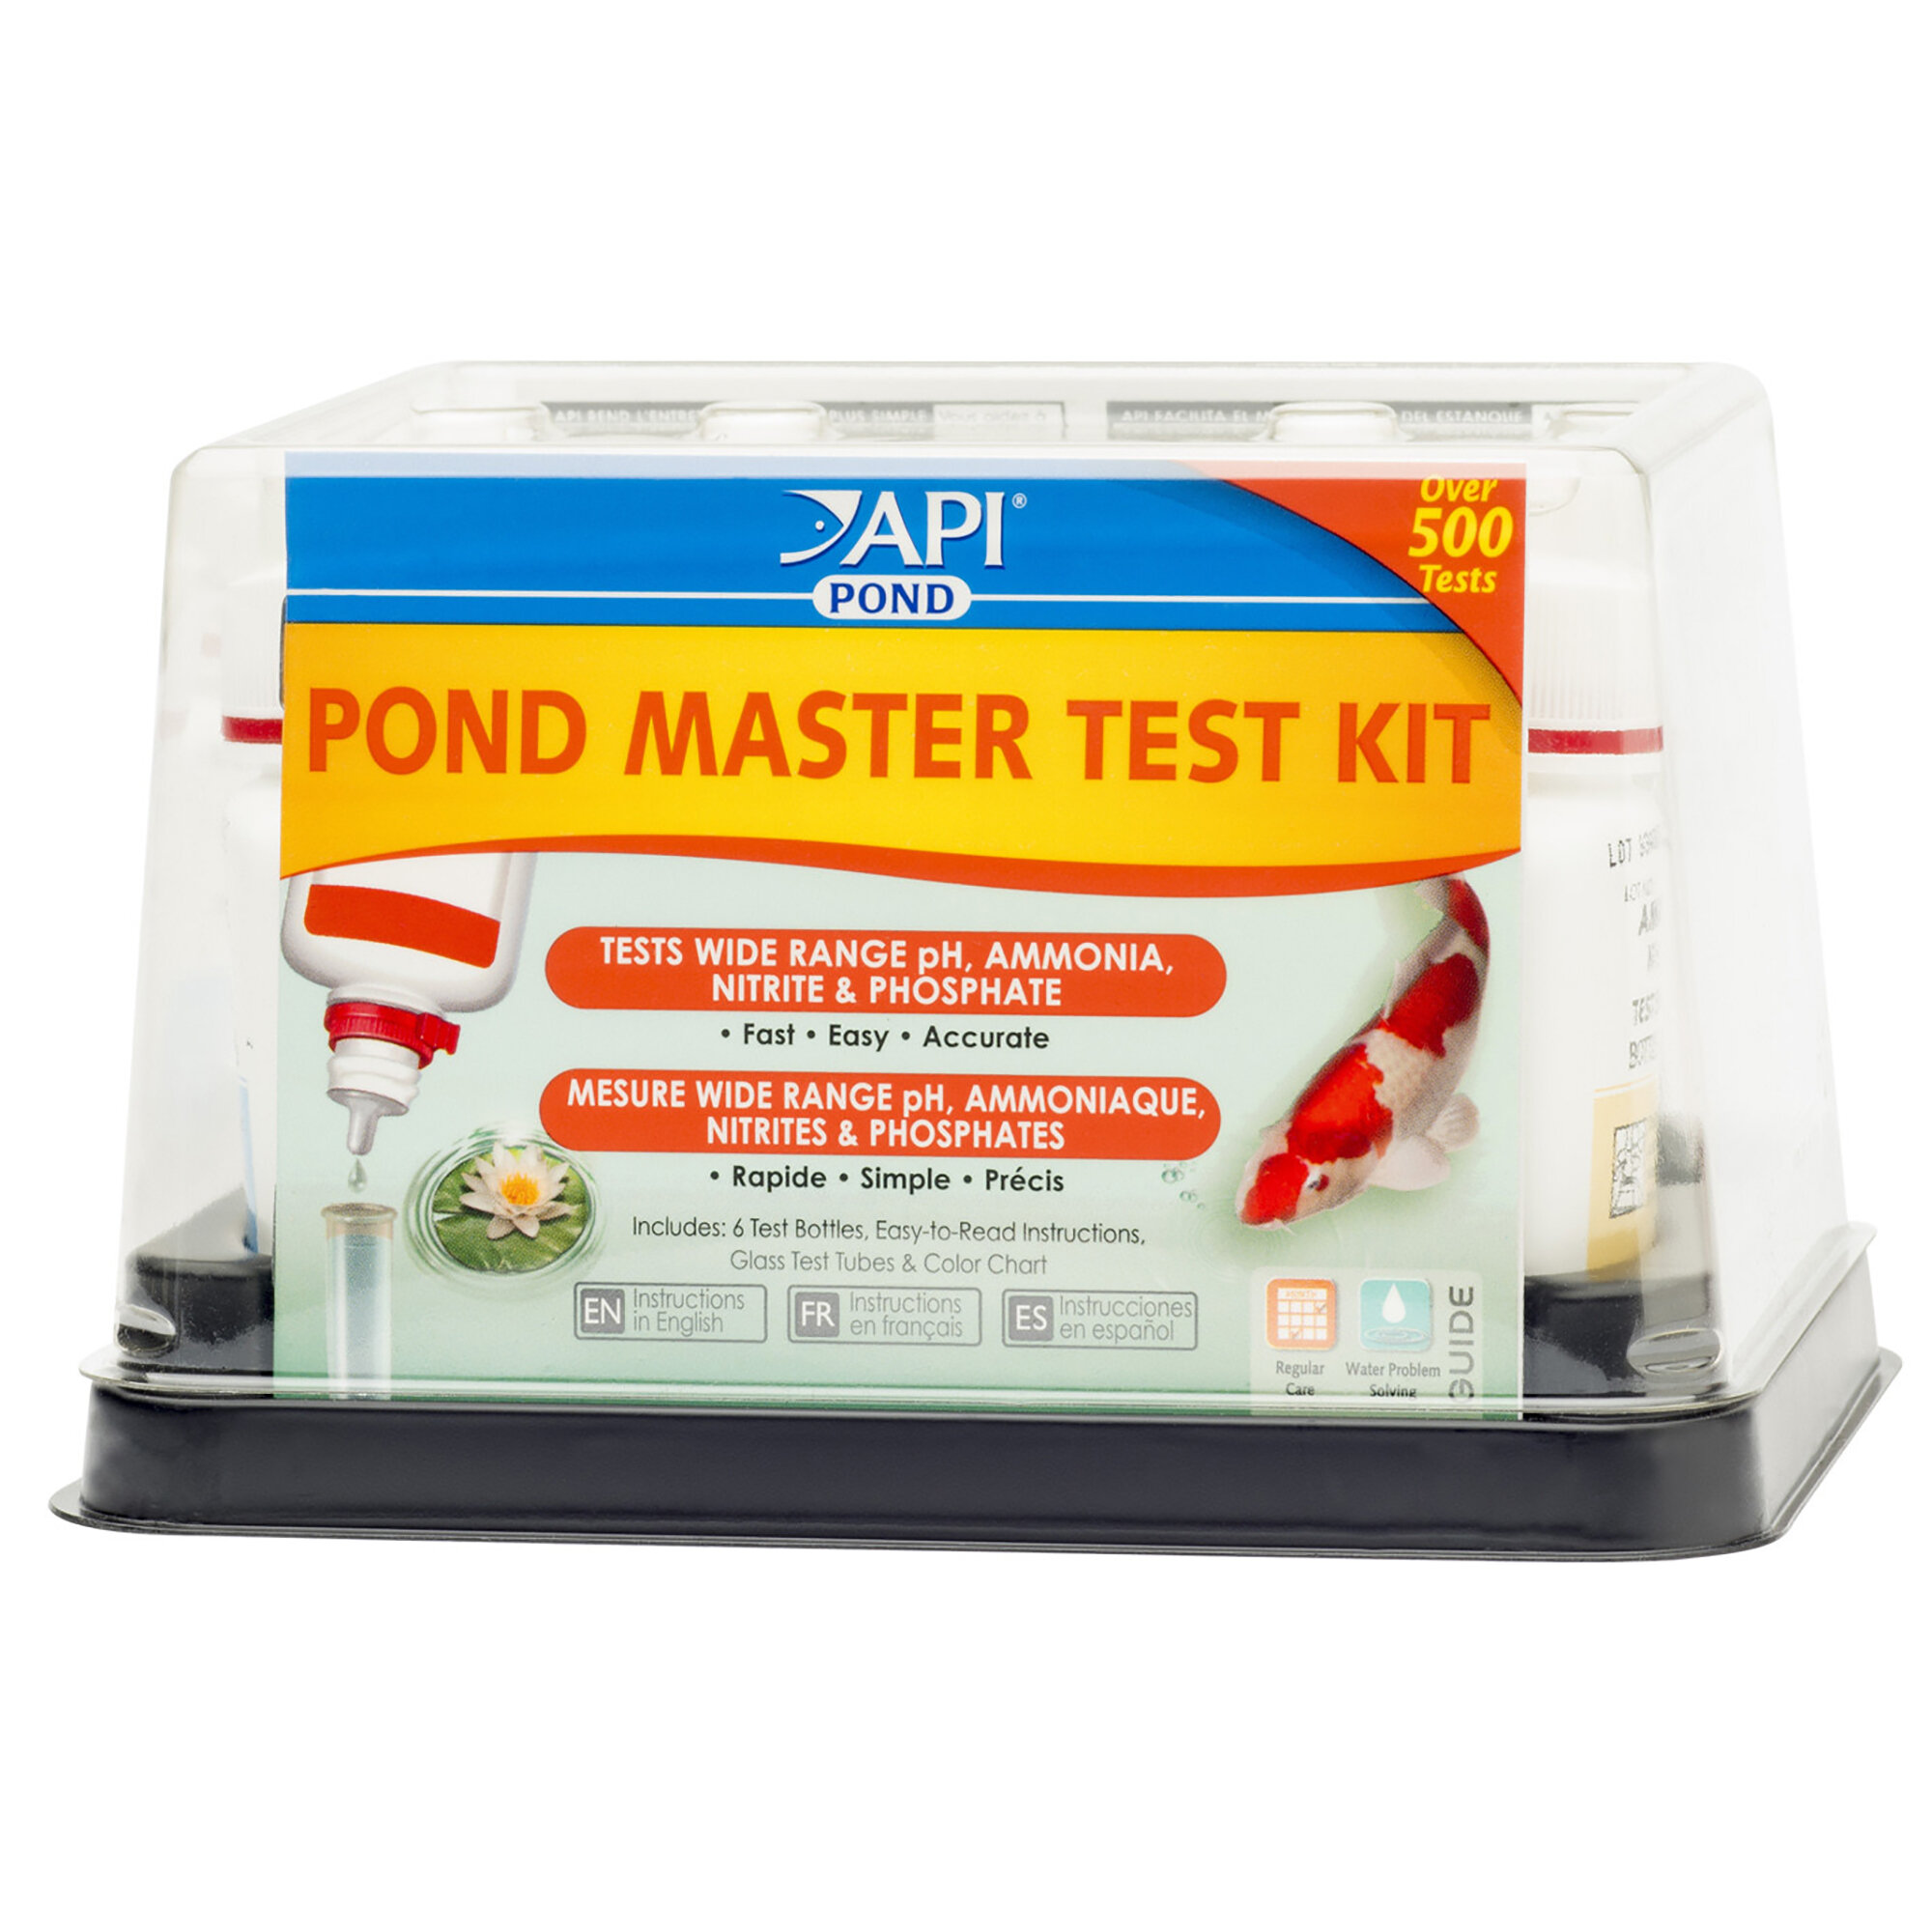 pond water test kit